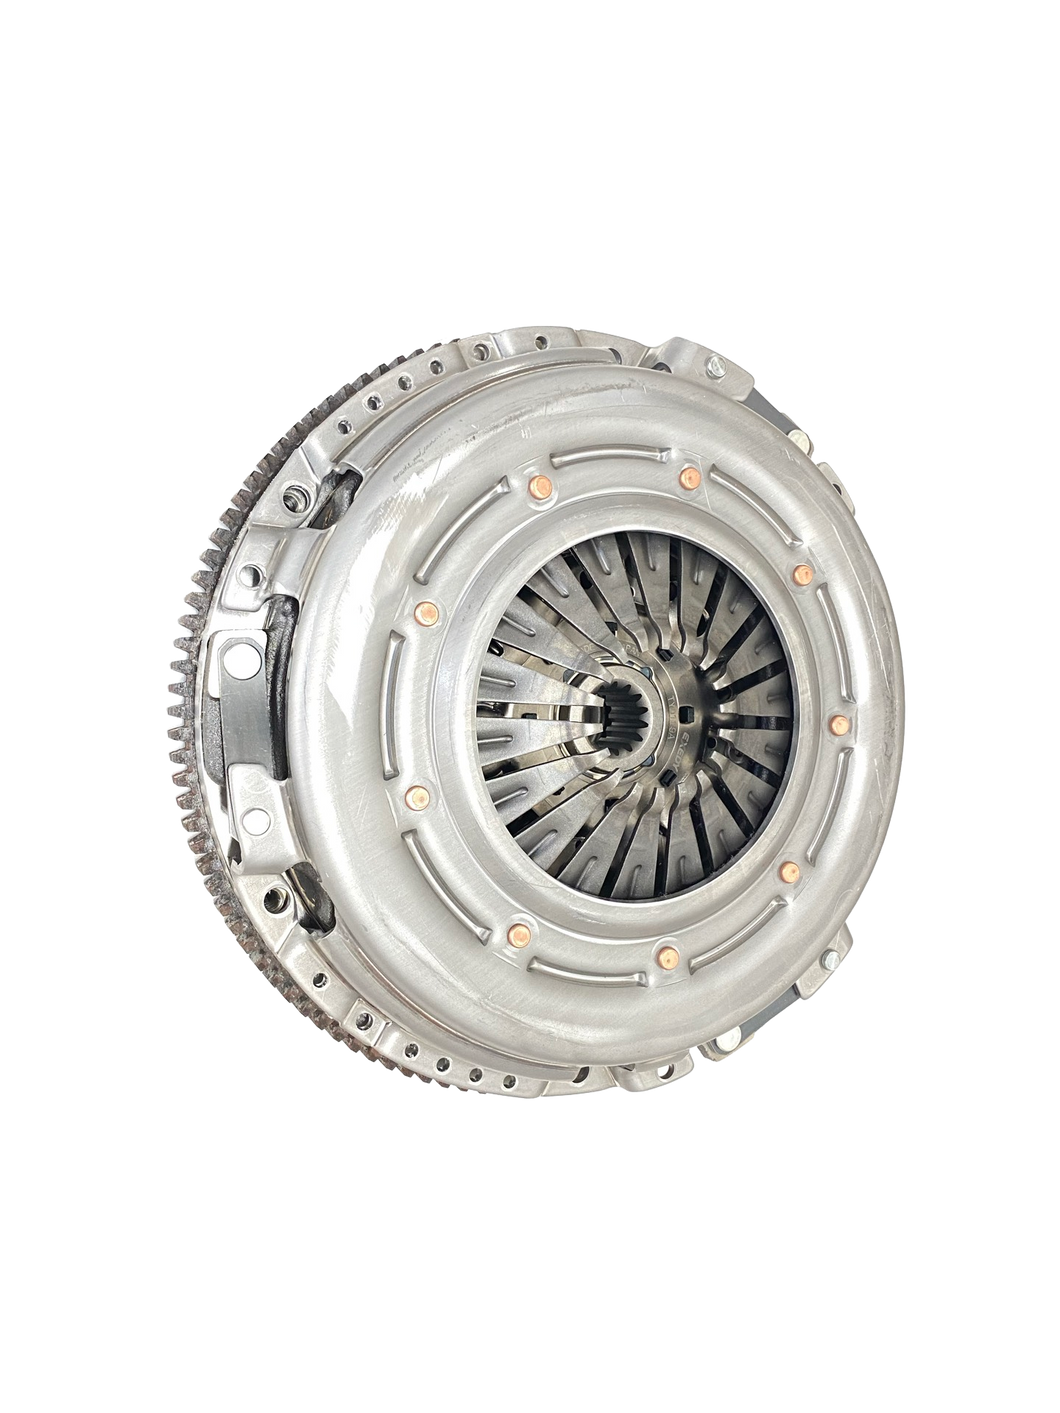 Isuzu D-Max (2012-2020) 3.0L 4JJ1-TCX 5 Speed 800NM NPC Performance Heavy Dutch Clutch & Flywheel